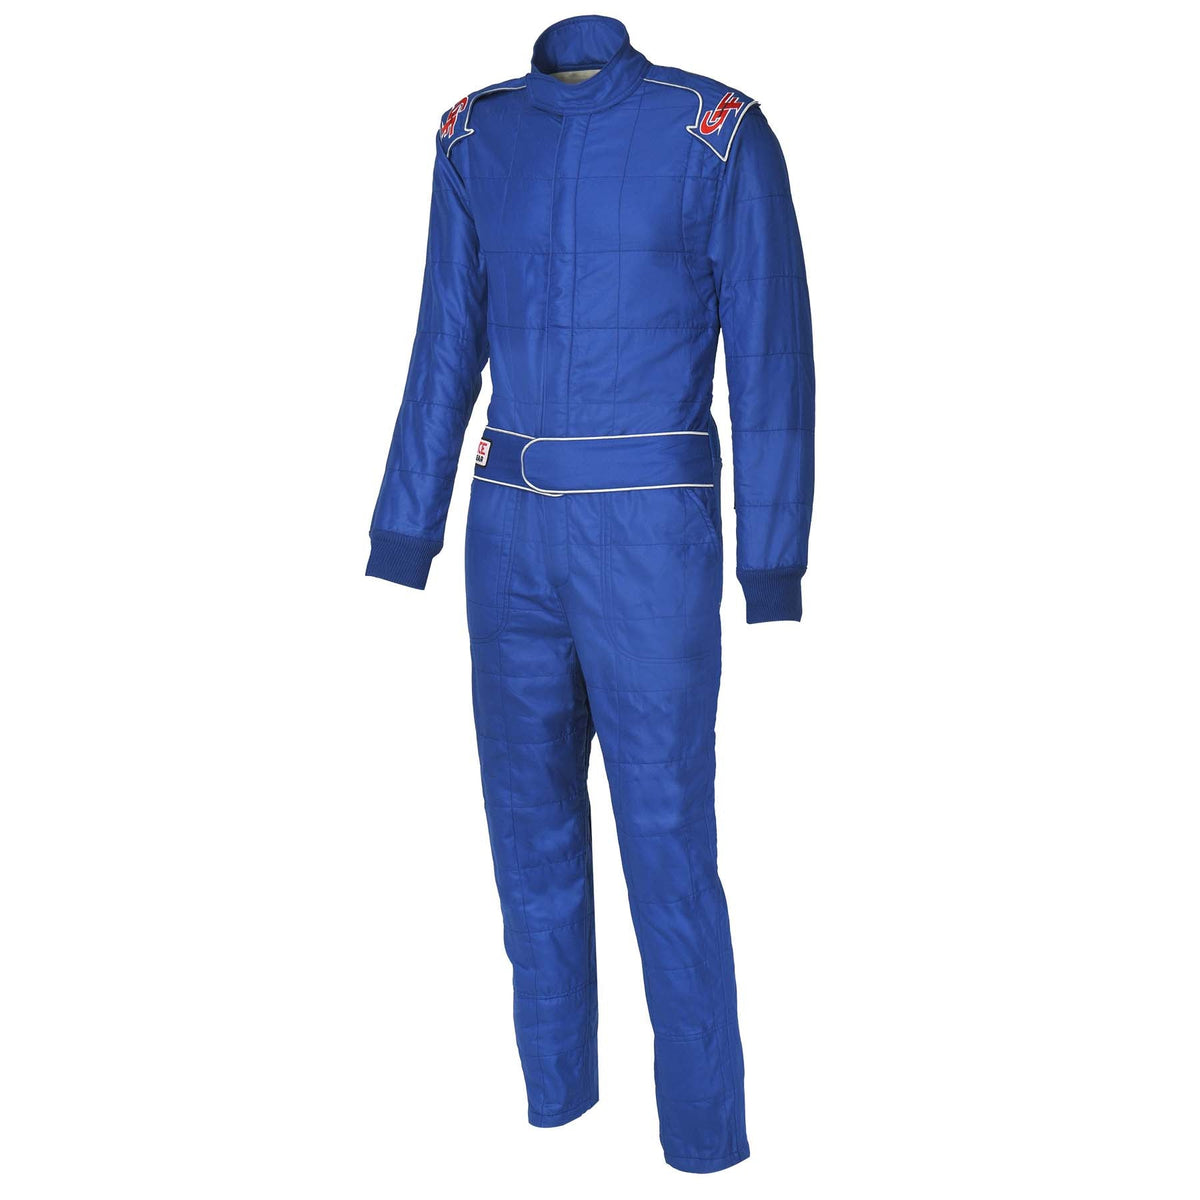 G-Force G-Limit Racing Suit - Blue